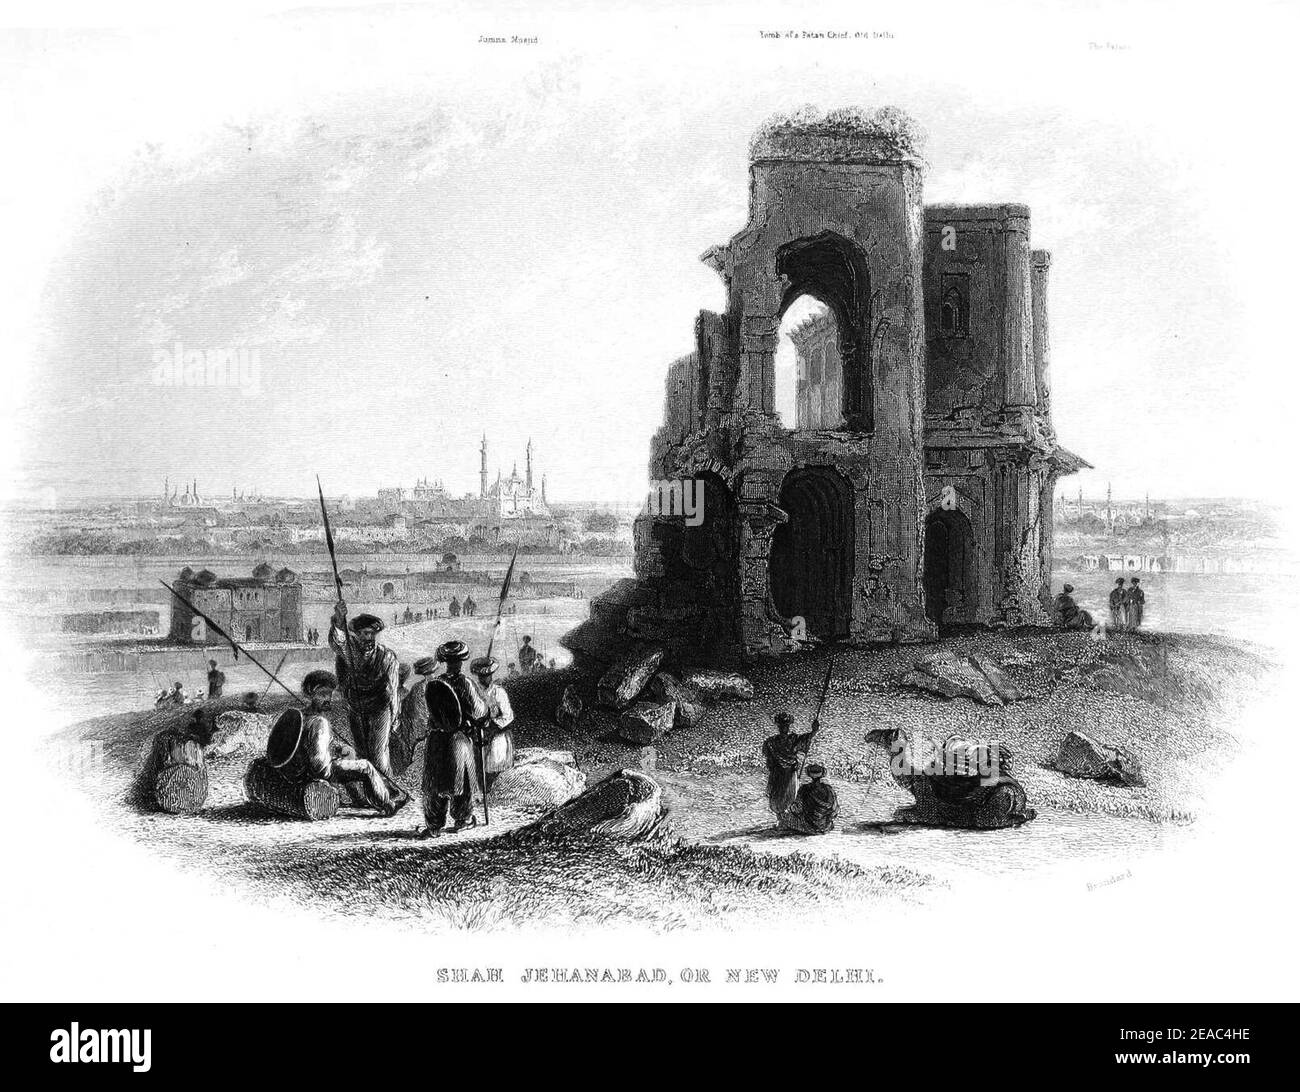 New Delhi 1850. Stock Photo